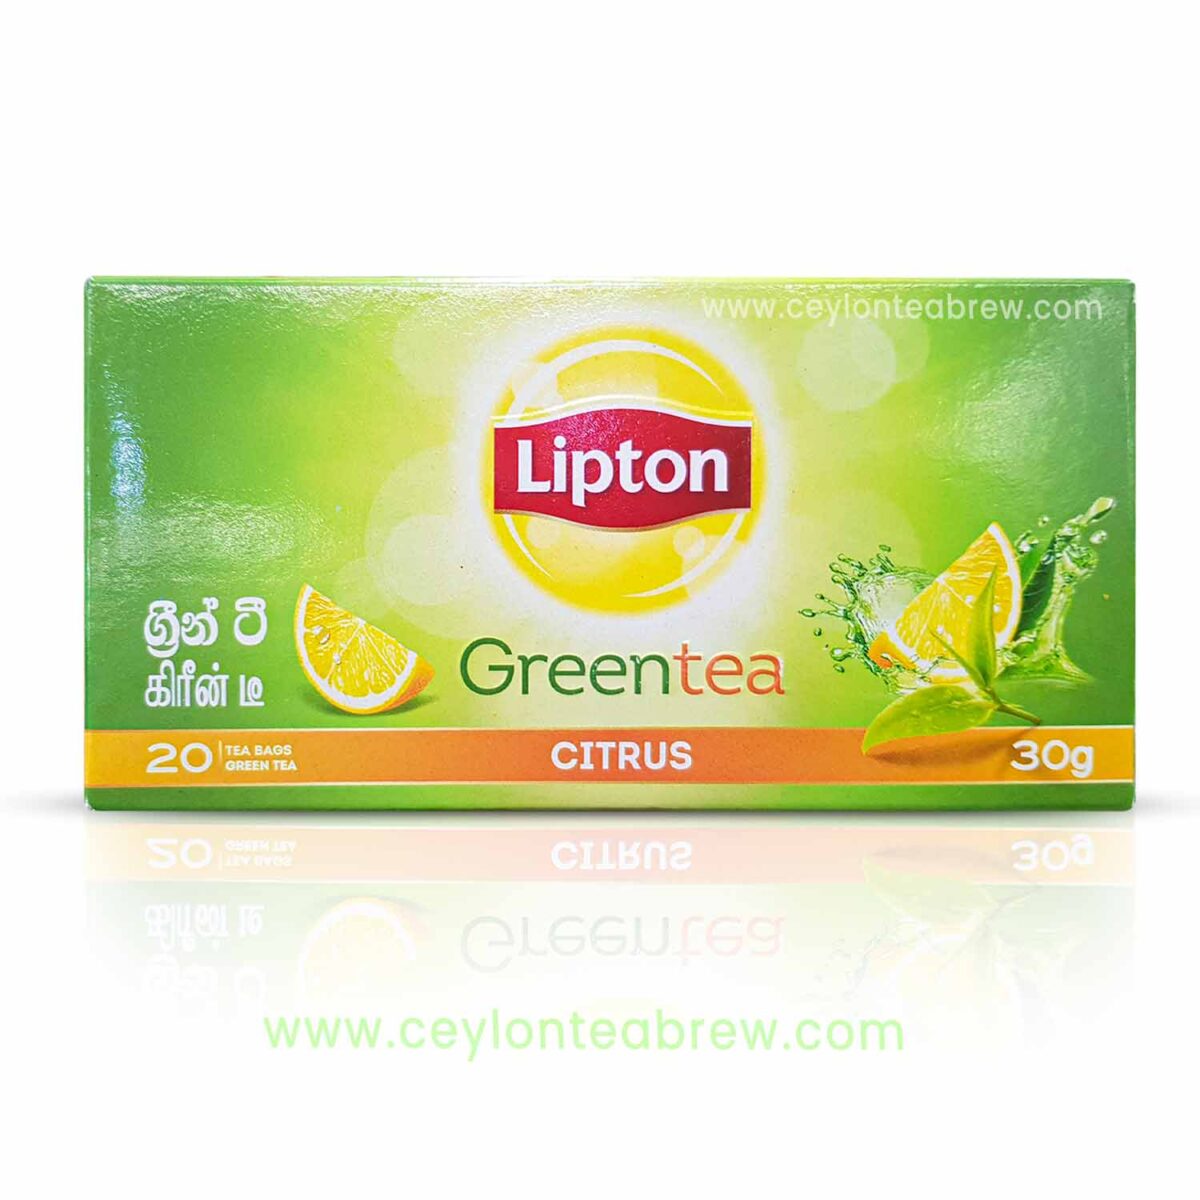 Lipton Ceylon green tea bags with citrus flavor